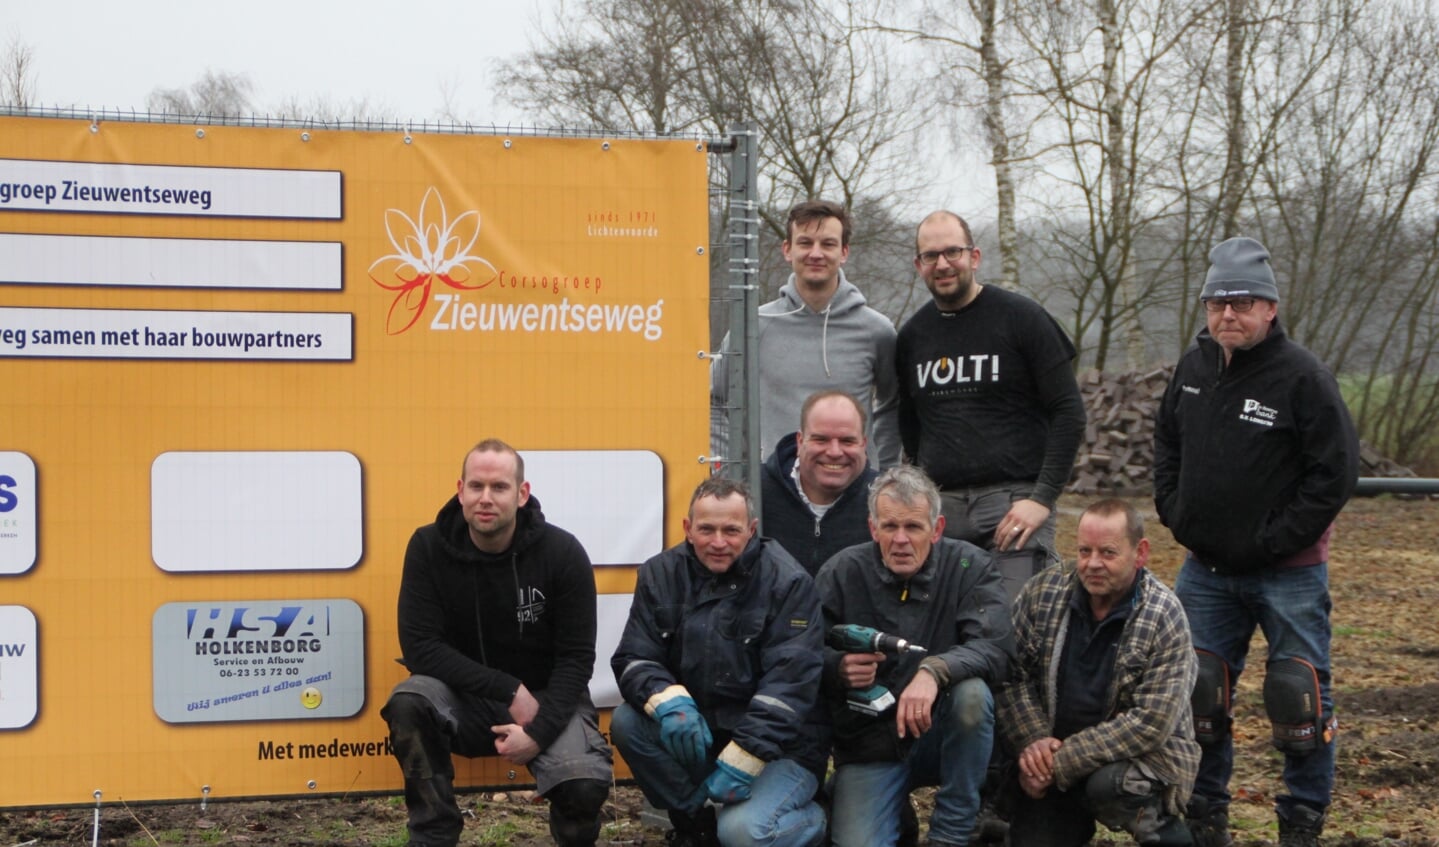 De bouwers van corsogroep Zieuwentseweg bouwen nieuwe locatie. Foto: Jos Betting